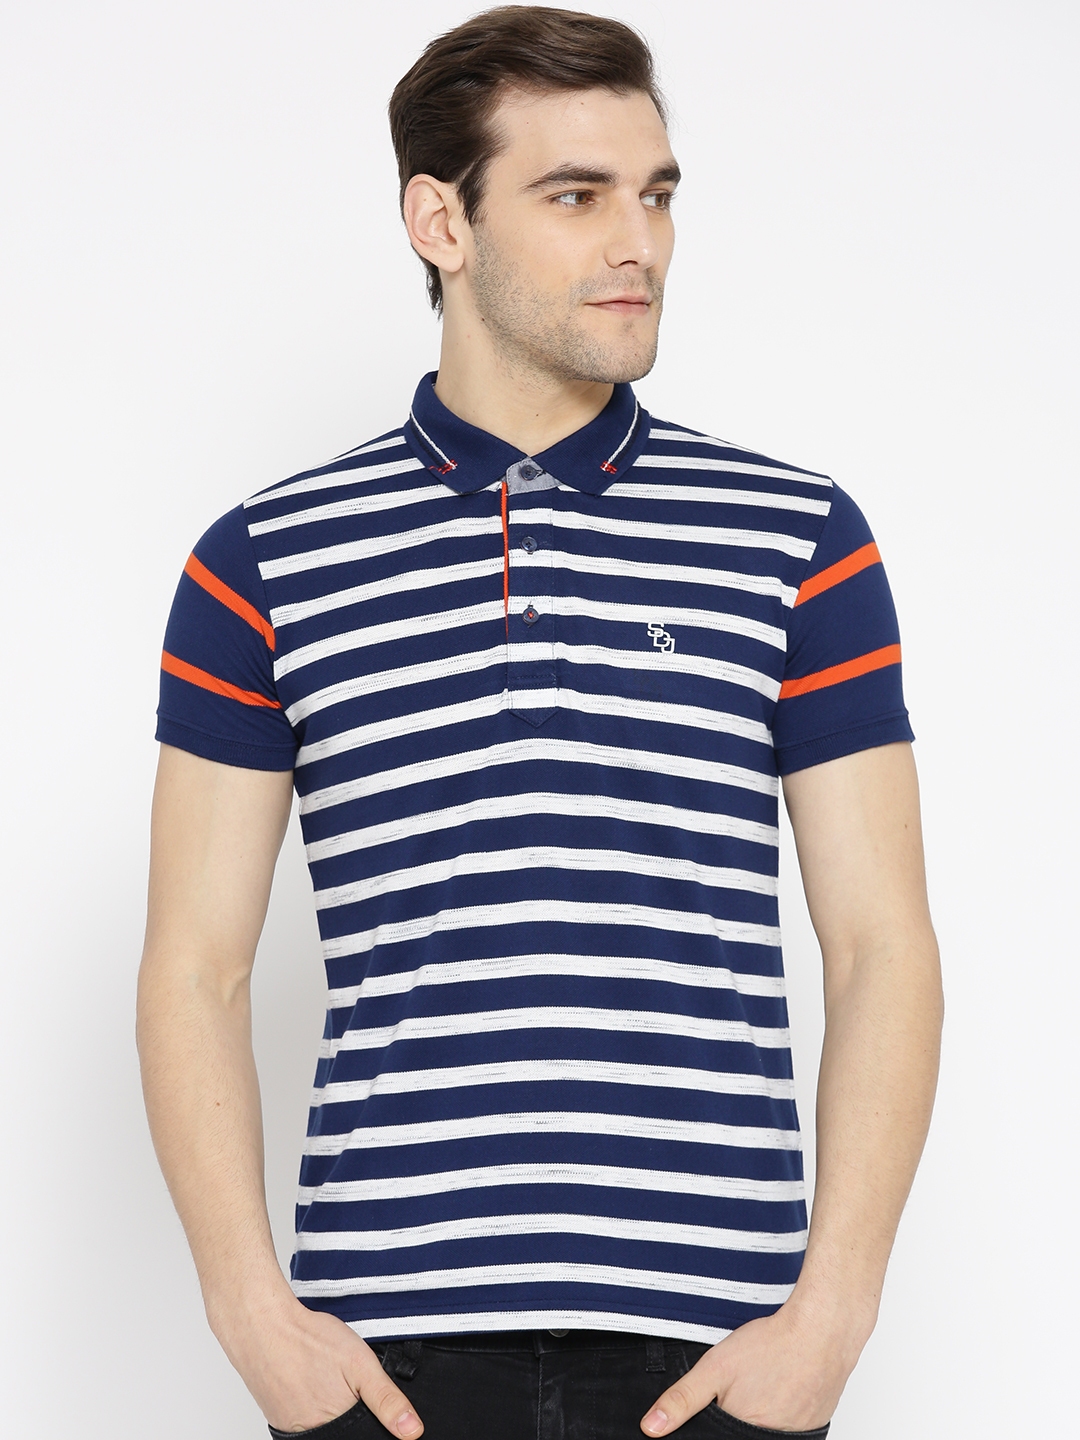 Buy Duke Men Navy Blue & Off White Striped Polo Collar T Shirt ...